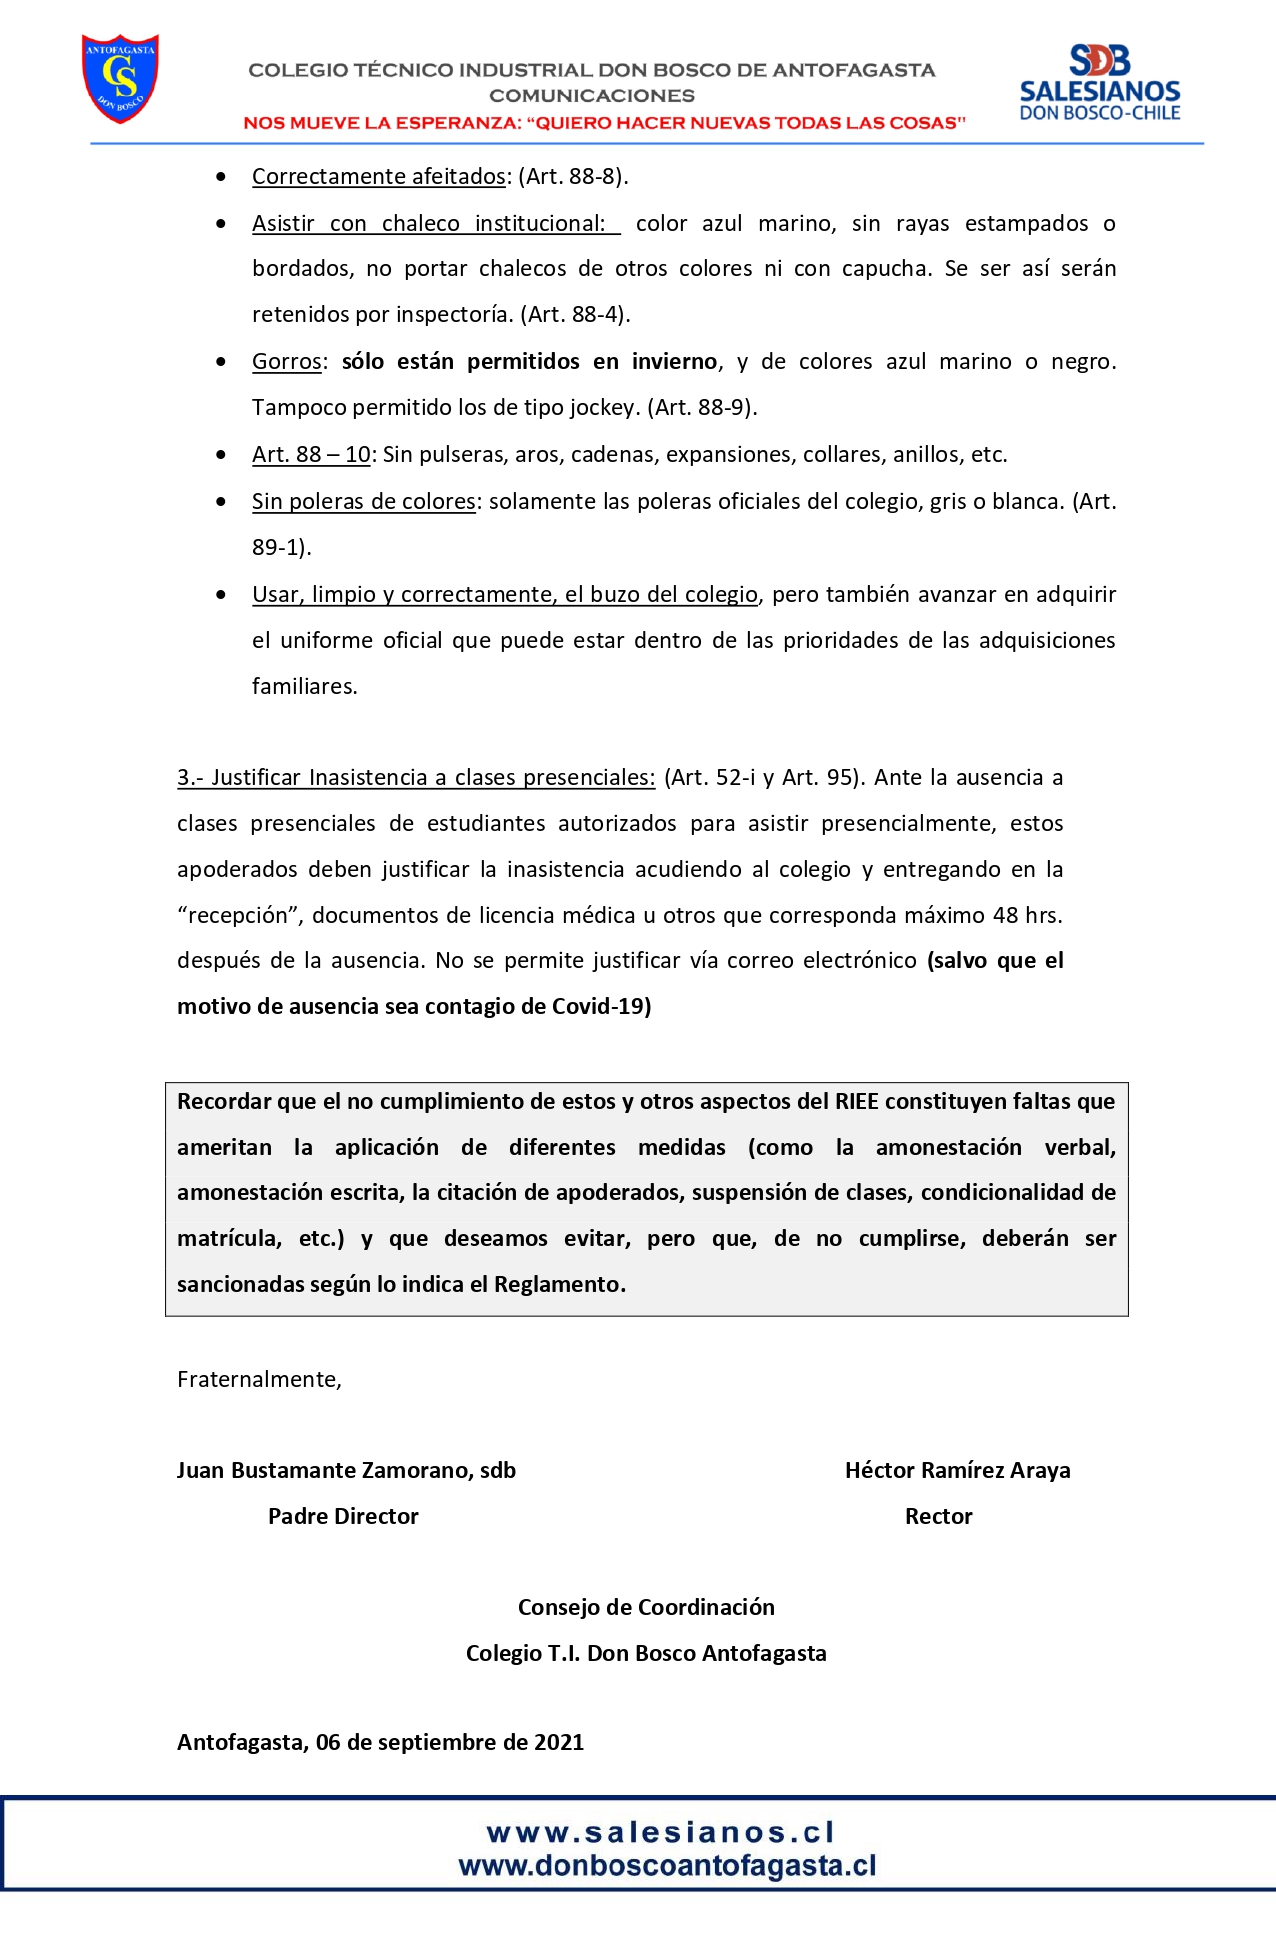 Circular N21 RE EDUCACIÓN RIEE page 0002